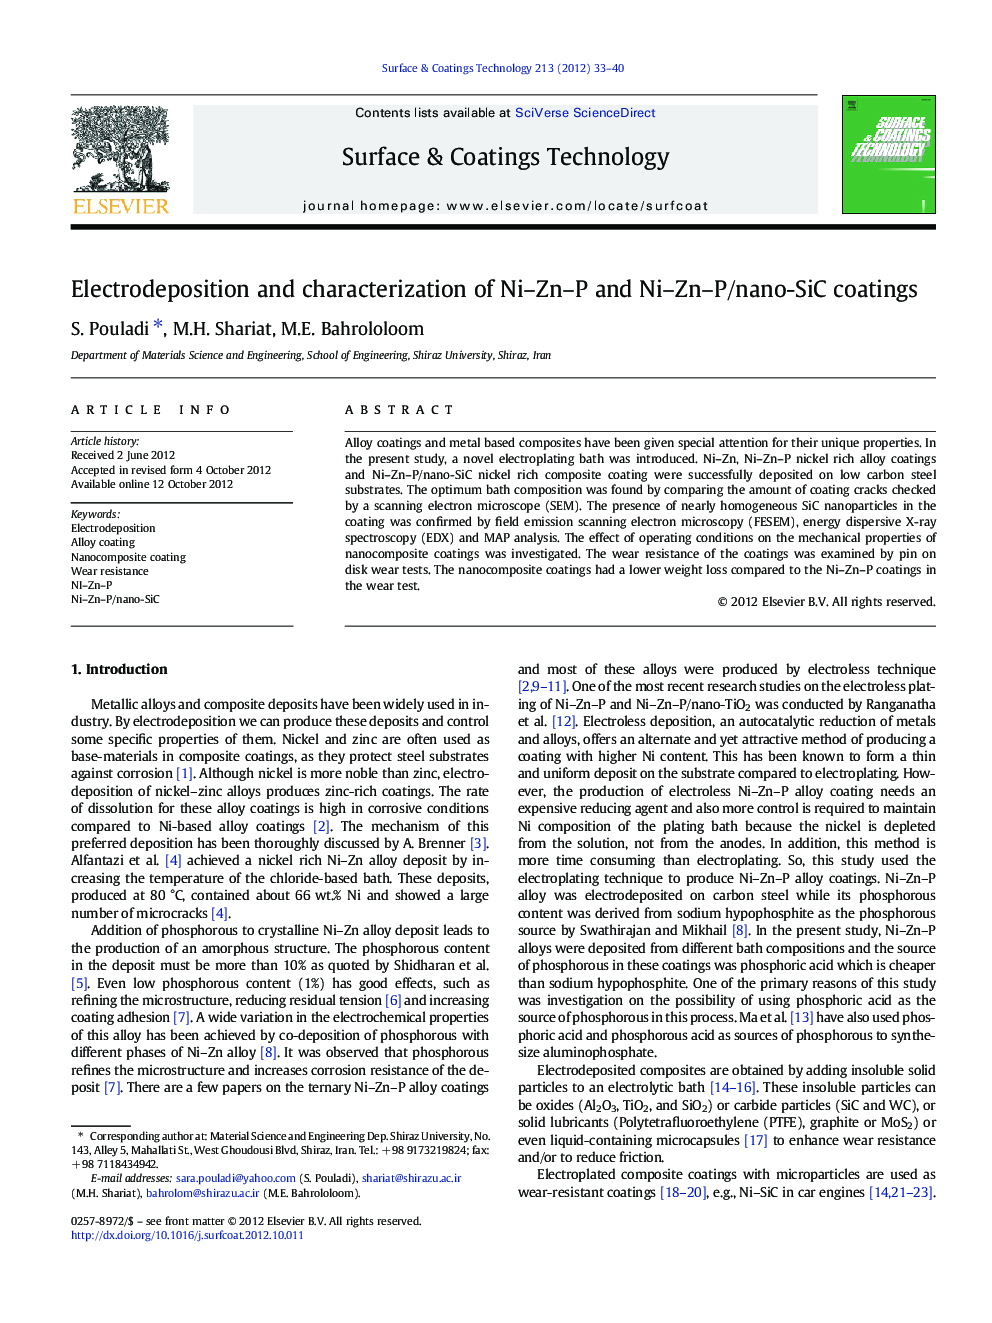 Electrodeposition and characterization of Ni–Zn–P and Ni–Zn–P/nano-SiC coatings